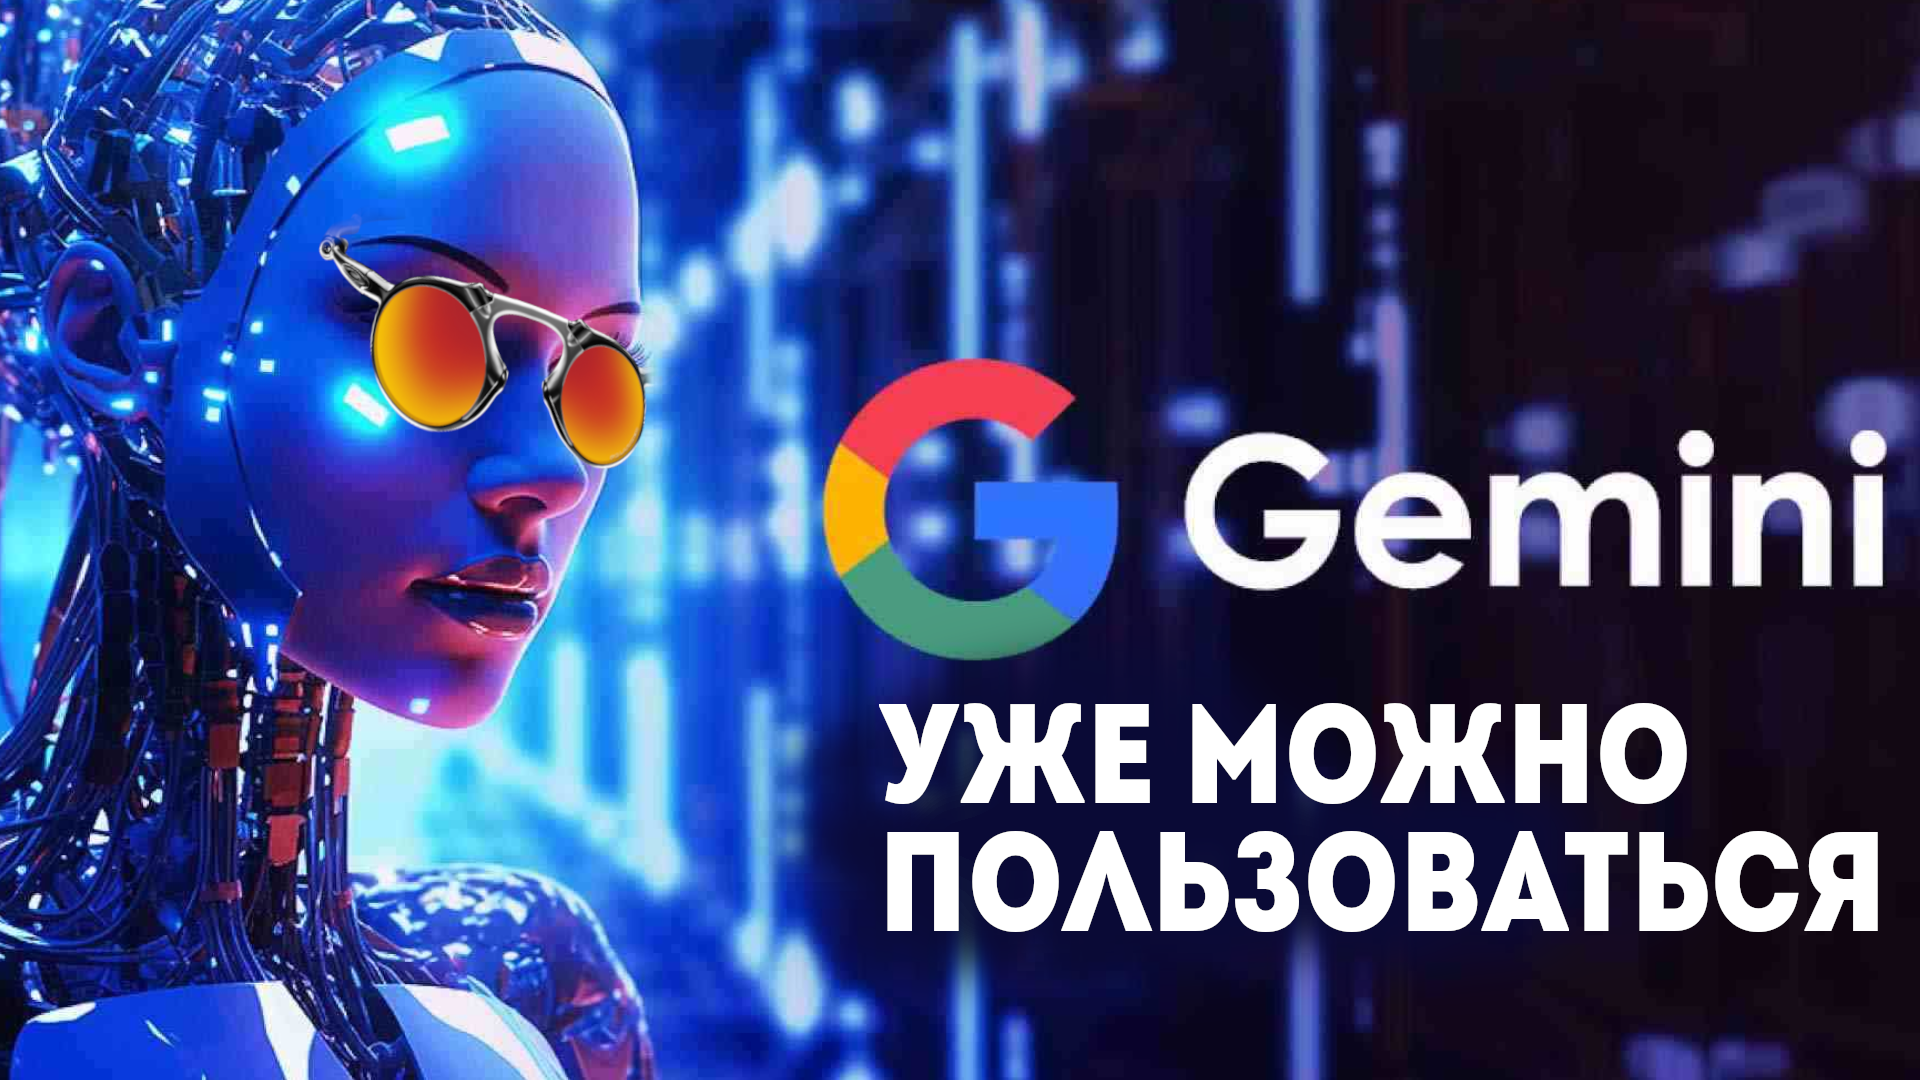 Google Gemini: Как Искусственный Интеллект Облегчает Повседневные Задачи